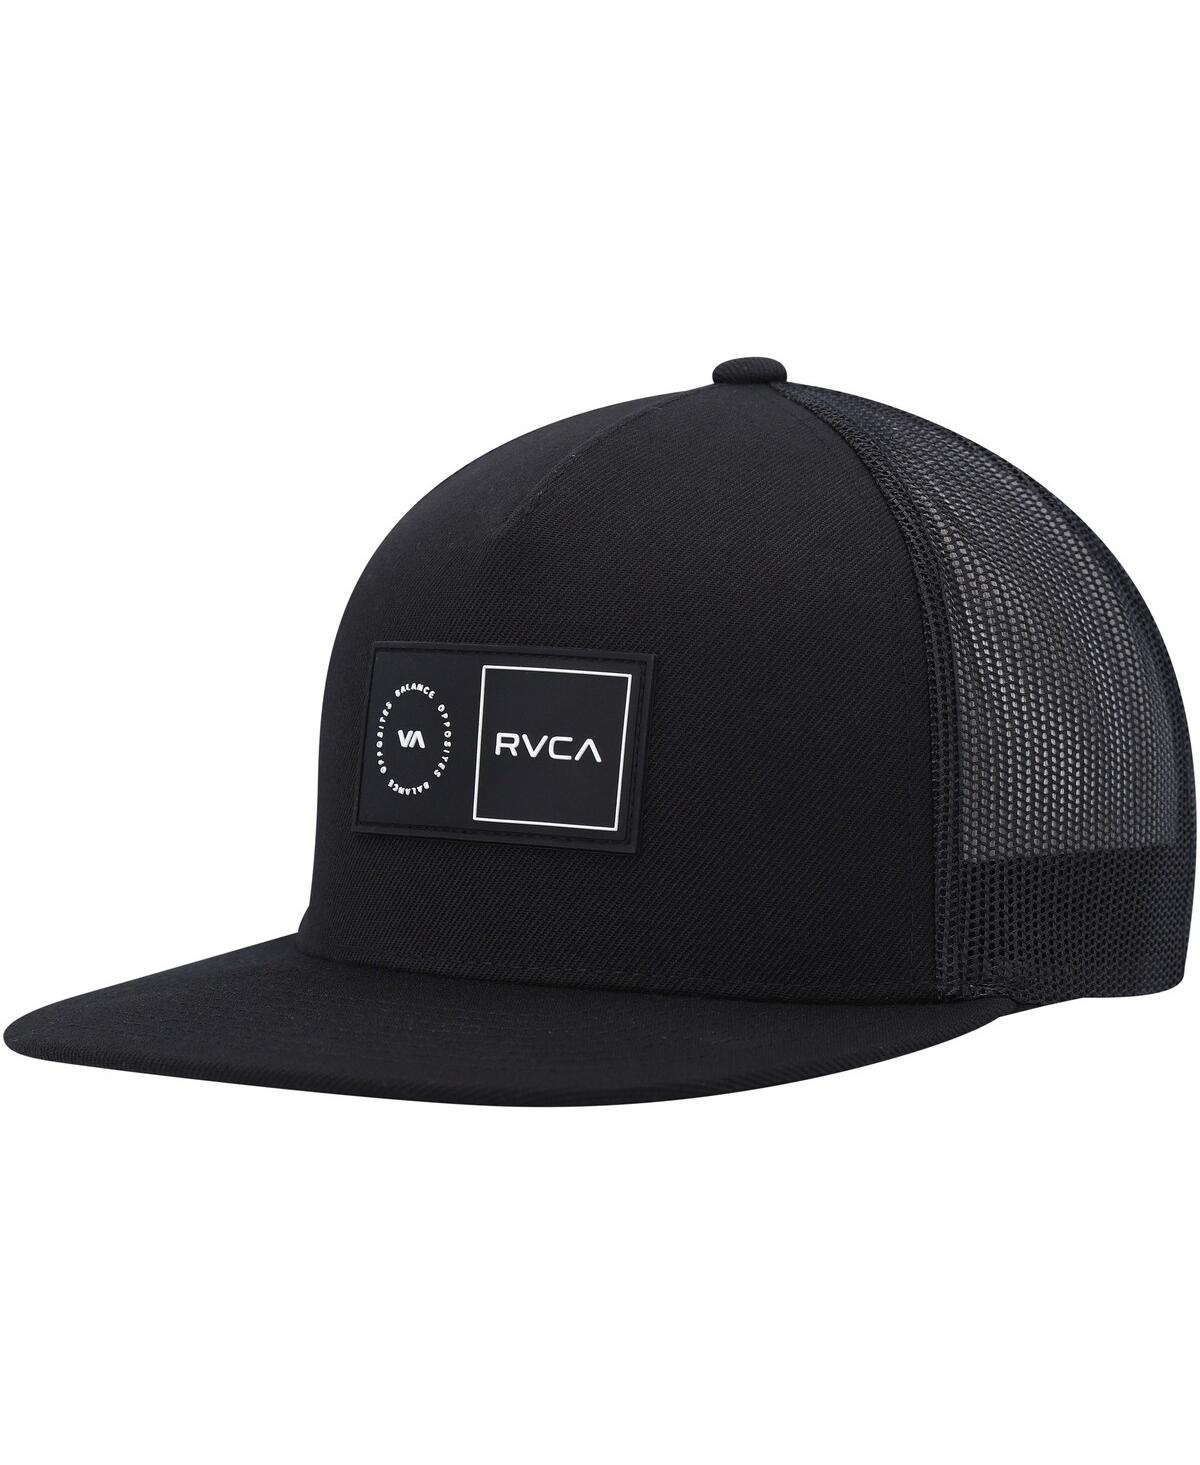 Rvca Men's  Black Platform Trucker Snapback Hat